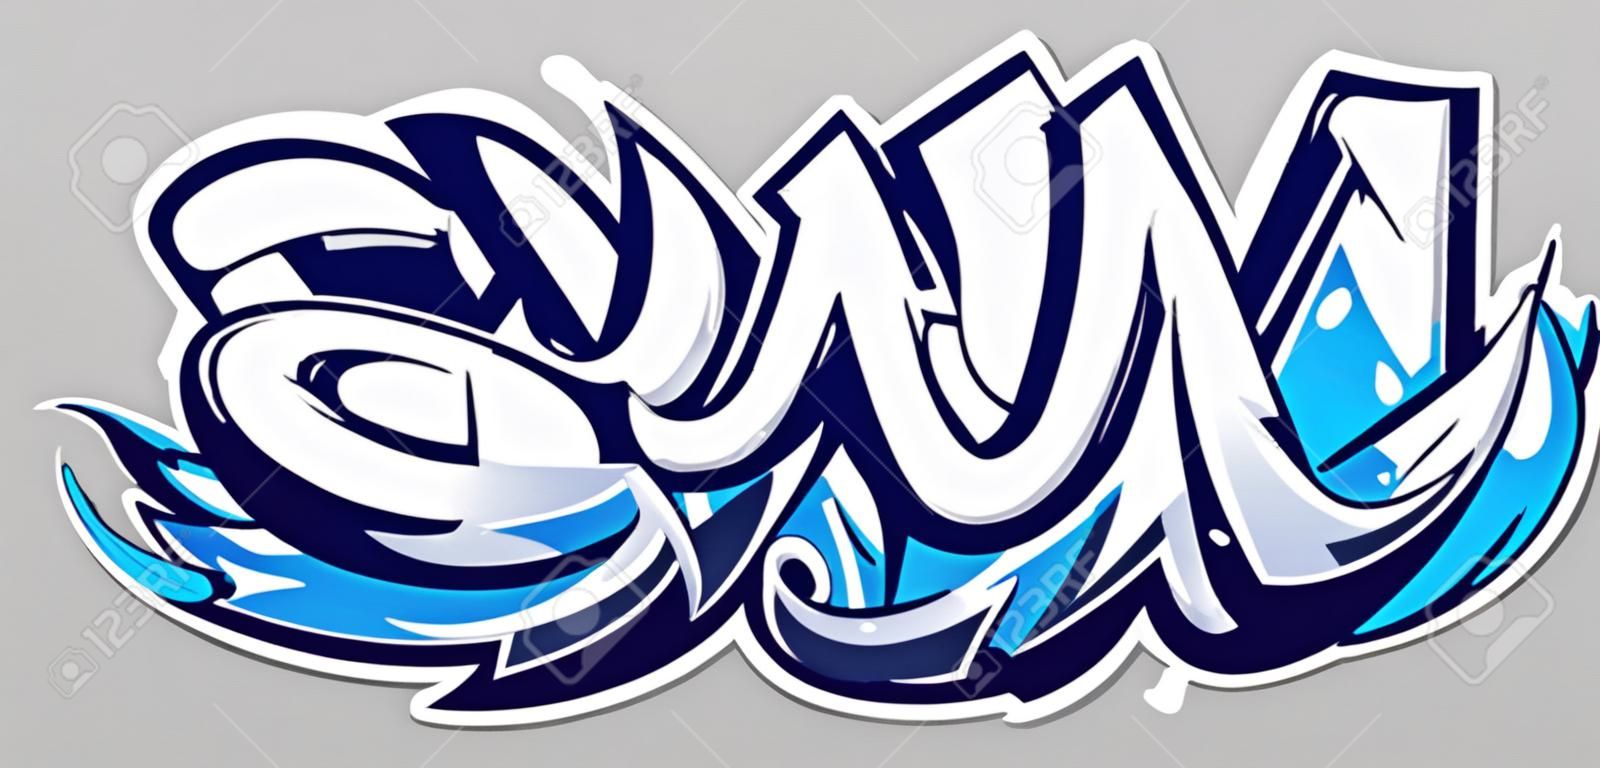 Iscrizione di vettore di colore blu Big Up su sfondo grigio. Arte dei graffiti in stile selvaggio dinamico. Illustrazione astratta tridimensionale delle lettere.